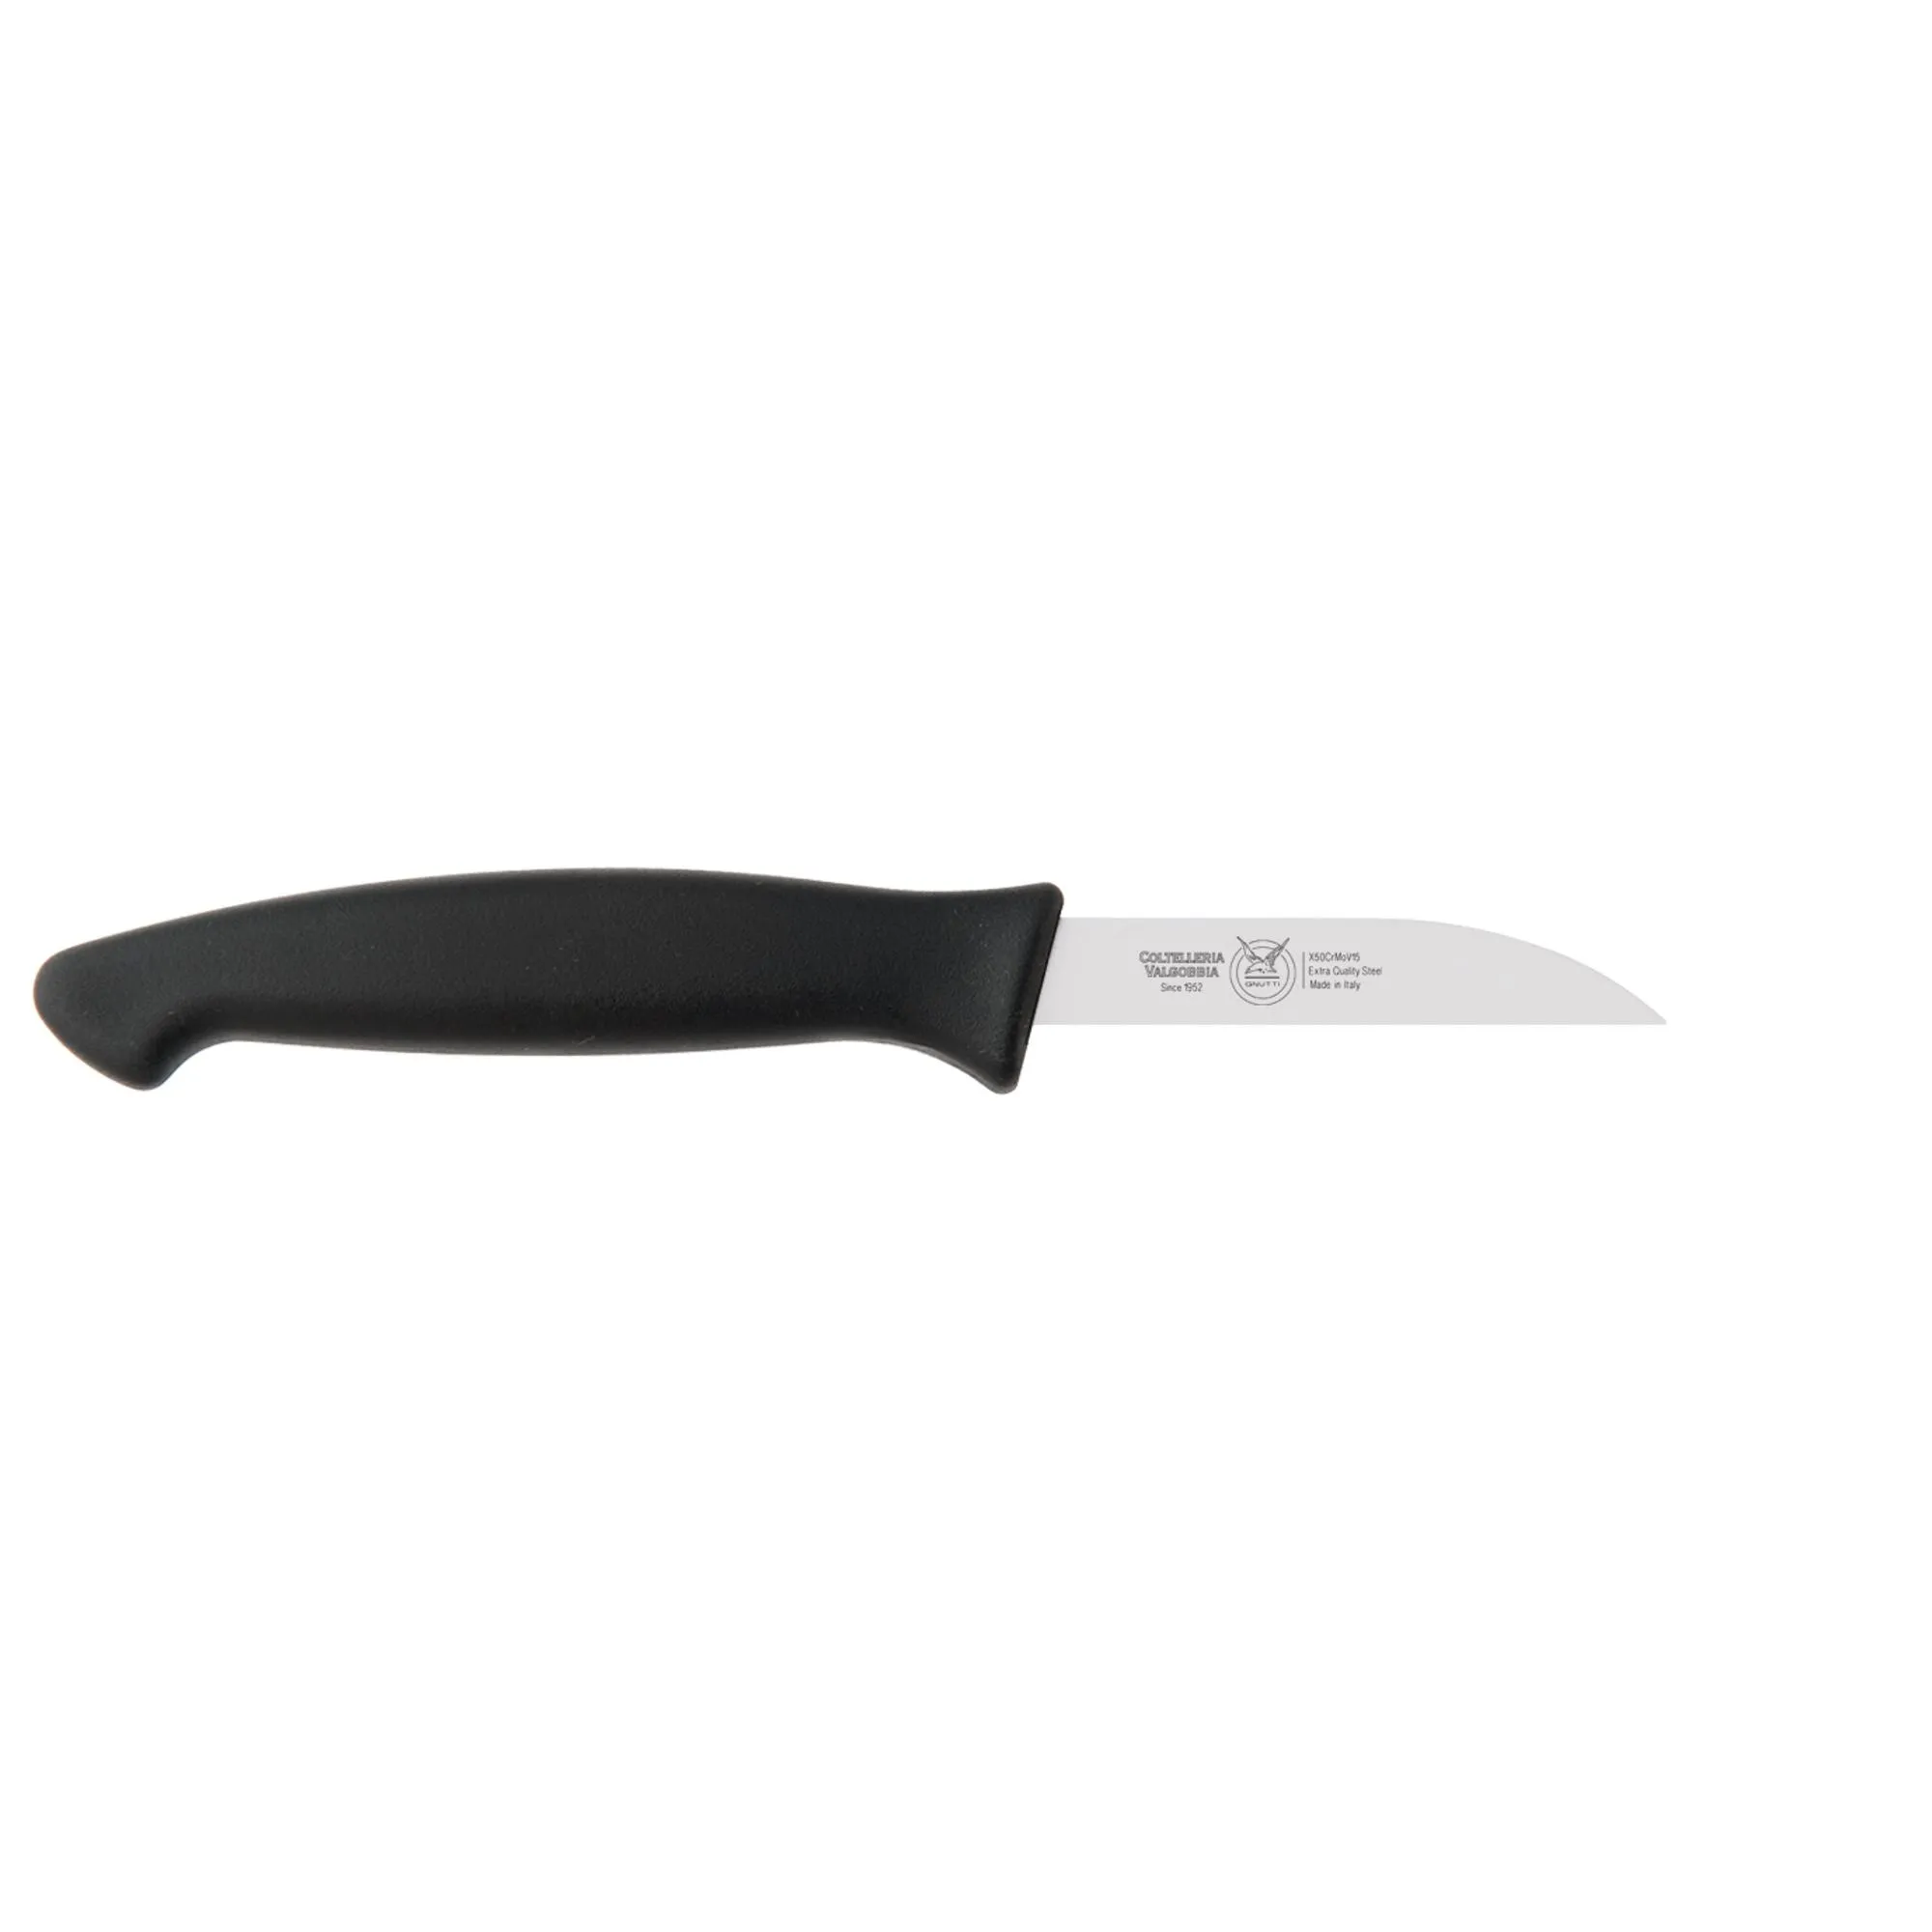 coltello cucina verdura retto affilato cm 8, colore nero , manico in gomma termoplastica